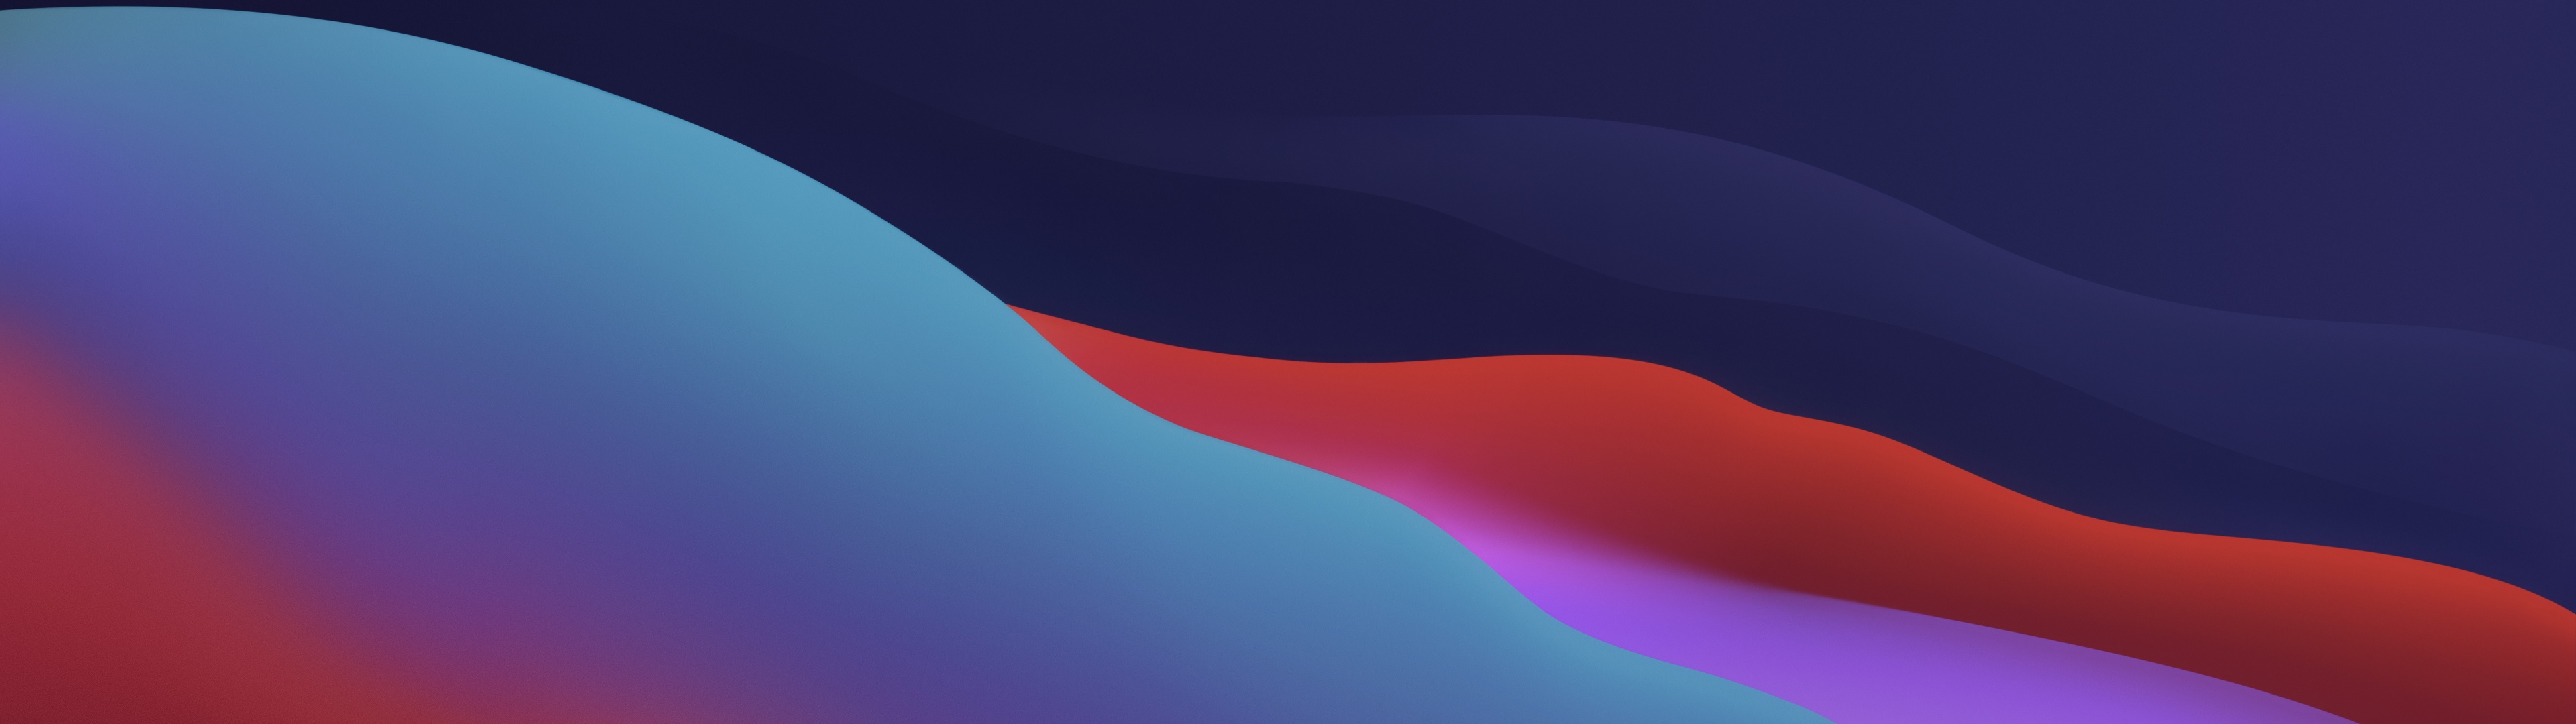 Với các hình nền macOS Big Sur Wallpaper đầy sáng tạo, bạn sẽ được trải nghiệm phong cách độc đáo của Apple. Với các mảng màu gradient và các yếu tố thiết kế độc đáo, bạn có thể tìm thấy một hình nền đẹp và hấp dẫn cho máy tính của mình.